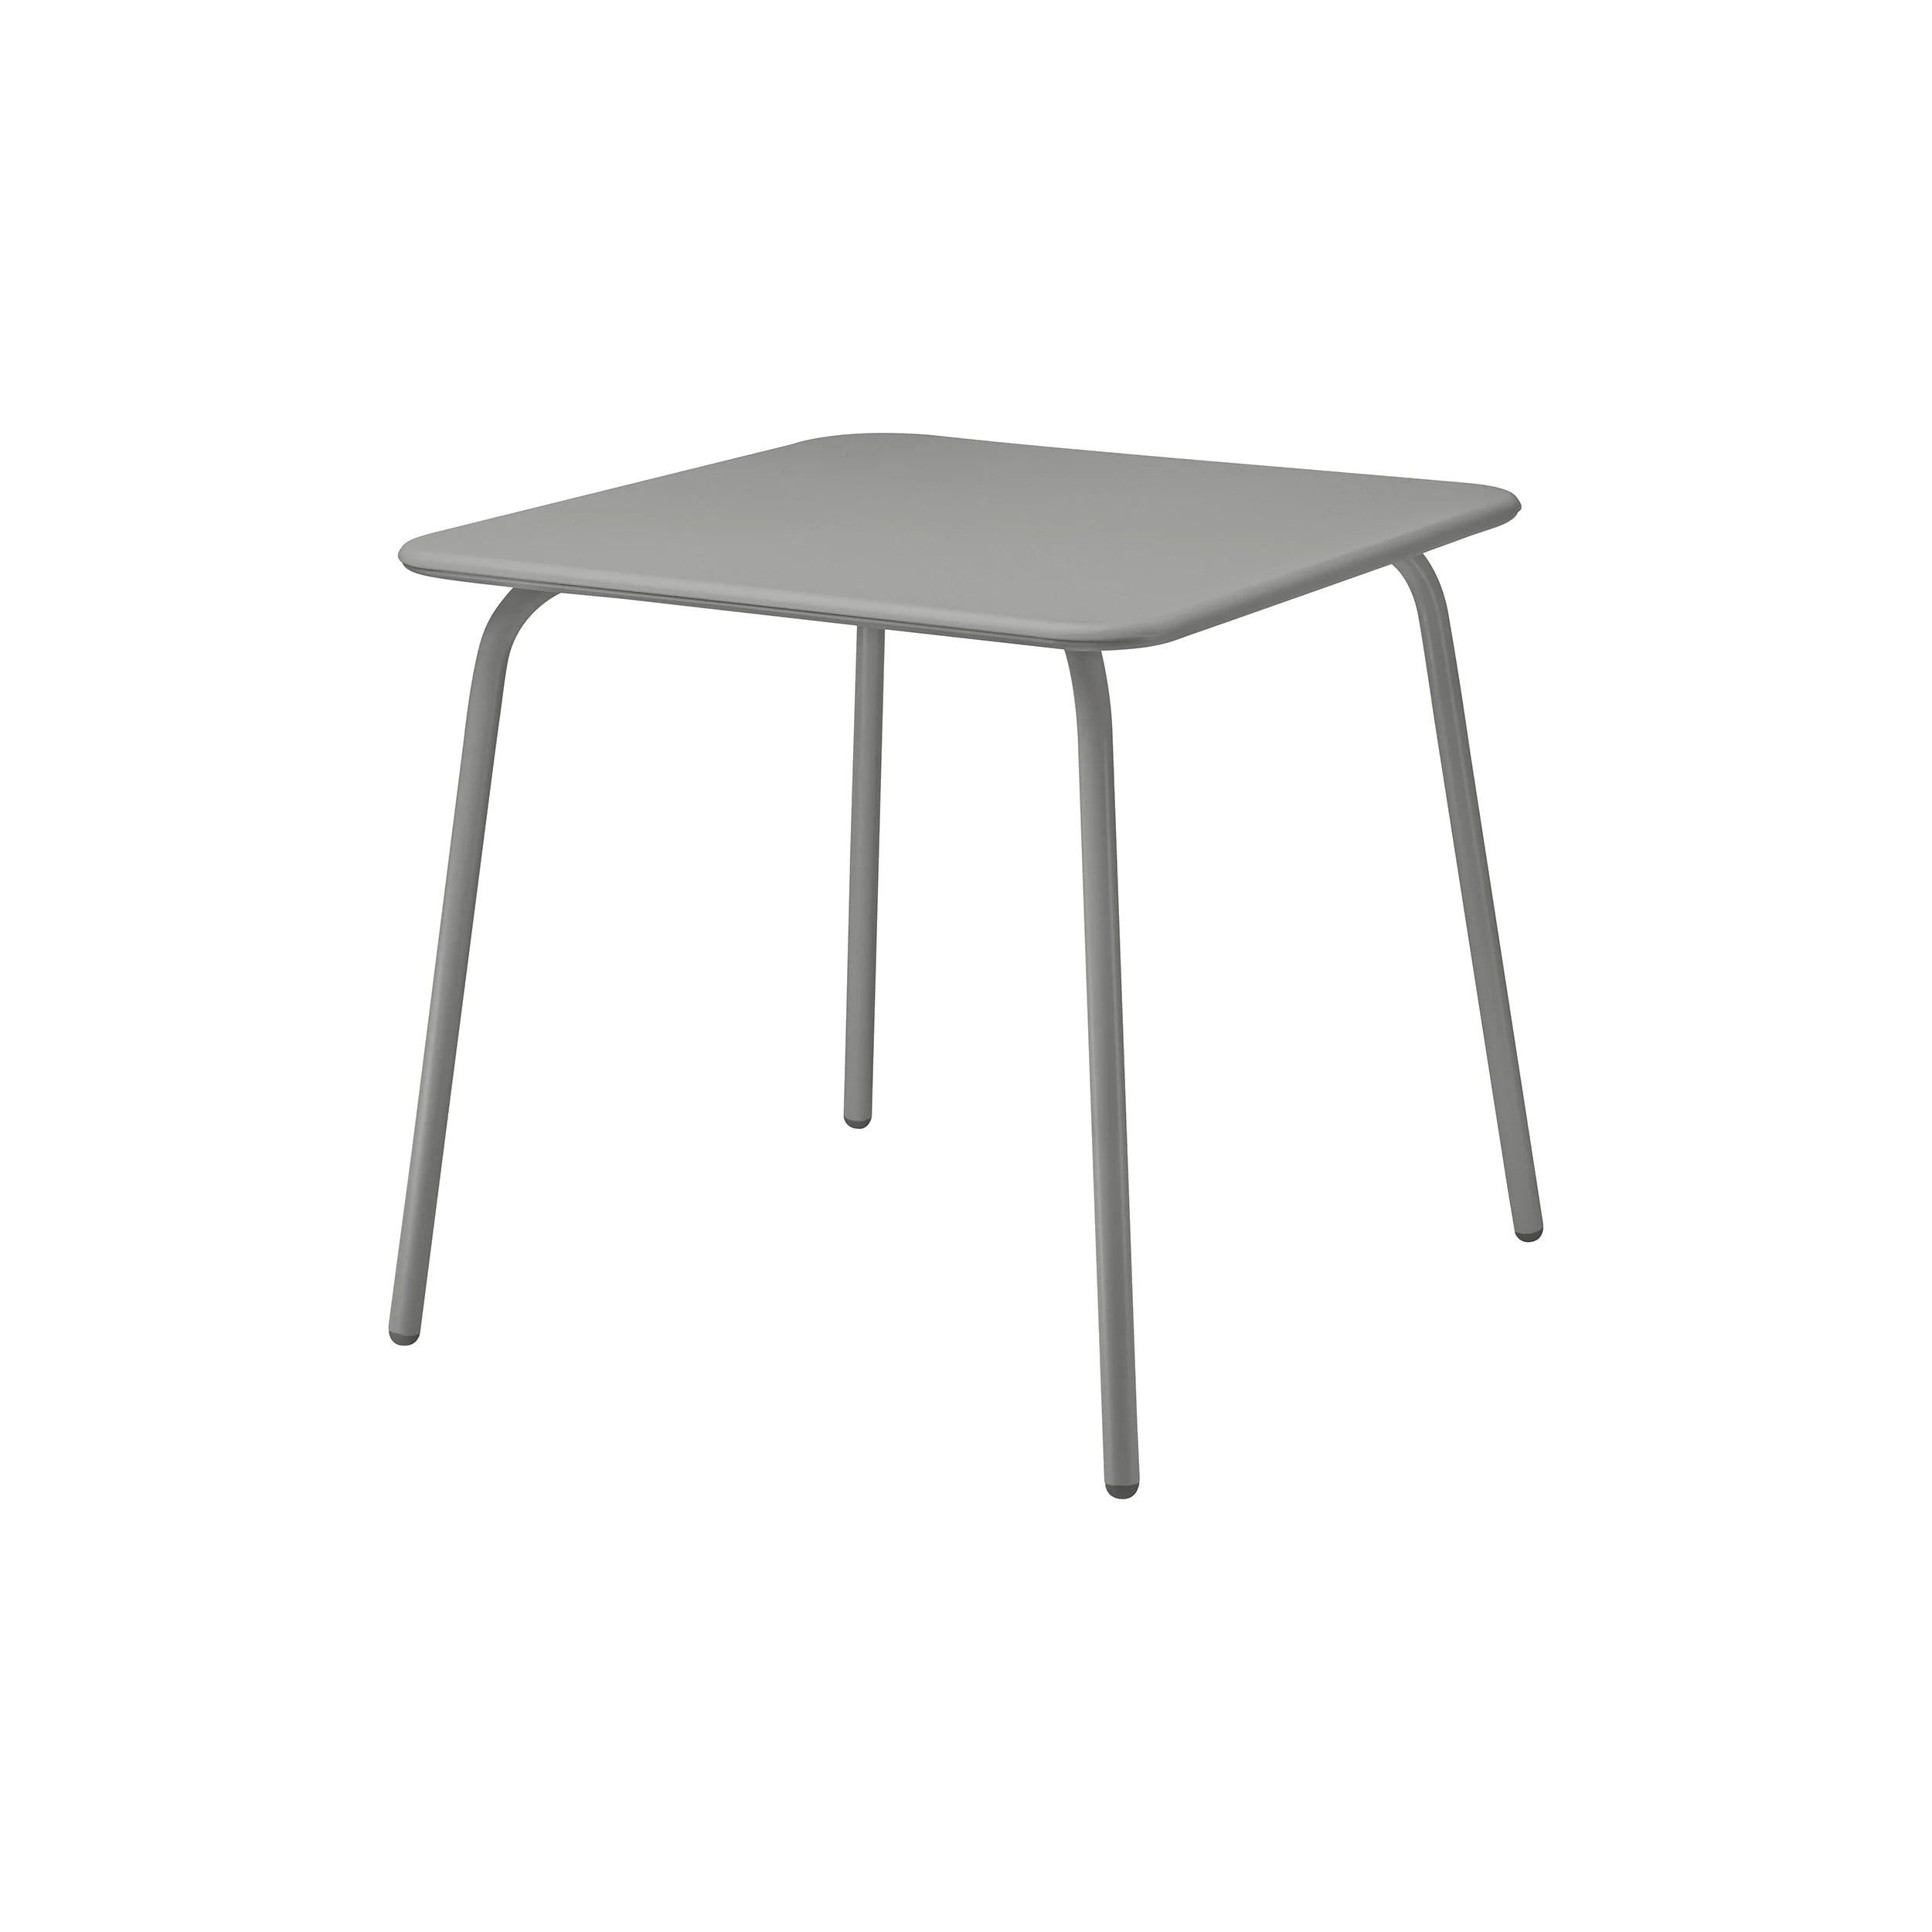 YUA Outdoor Square Bistro Table -Granite Grey